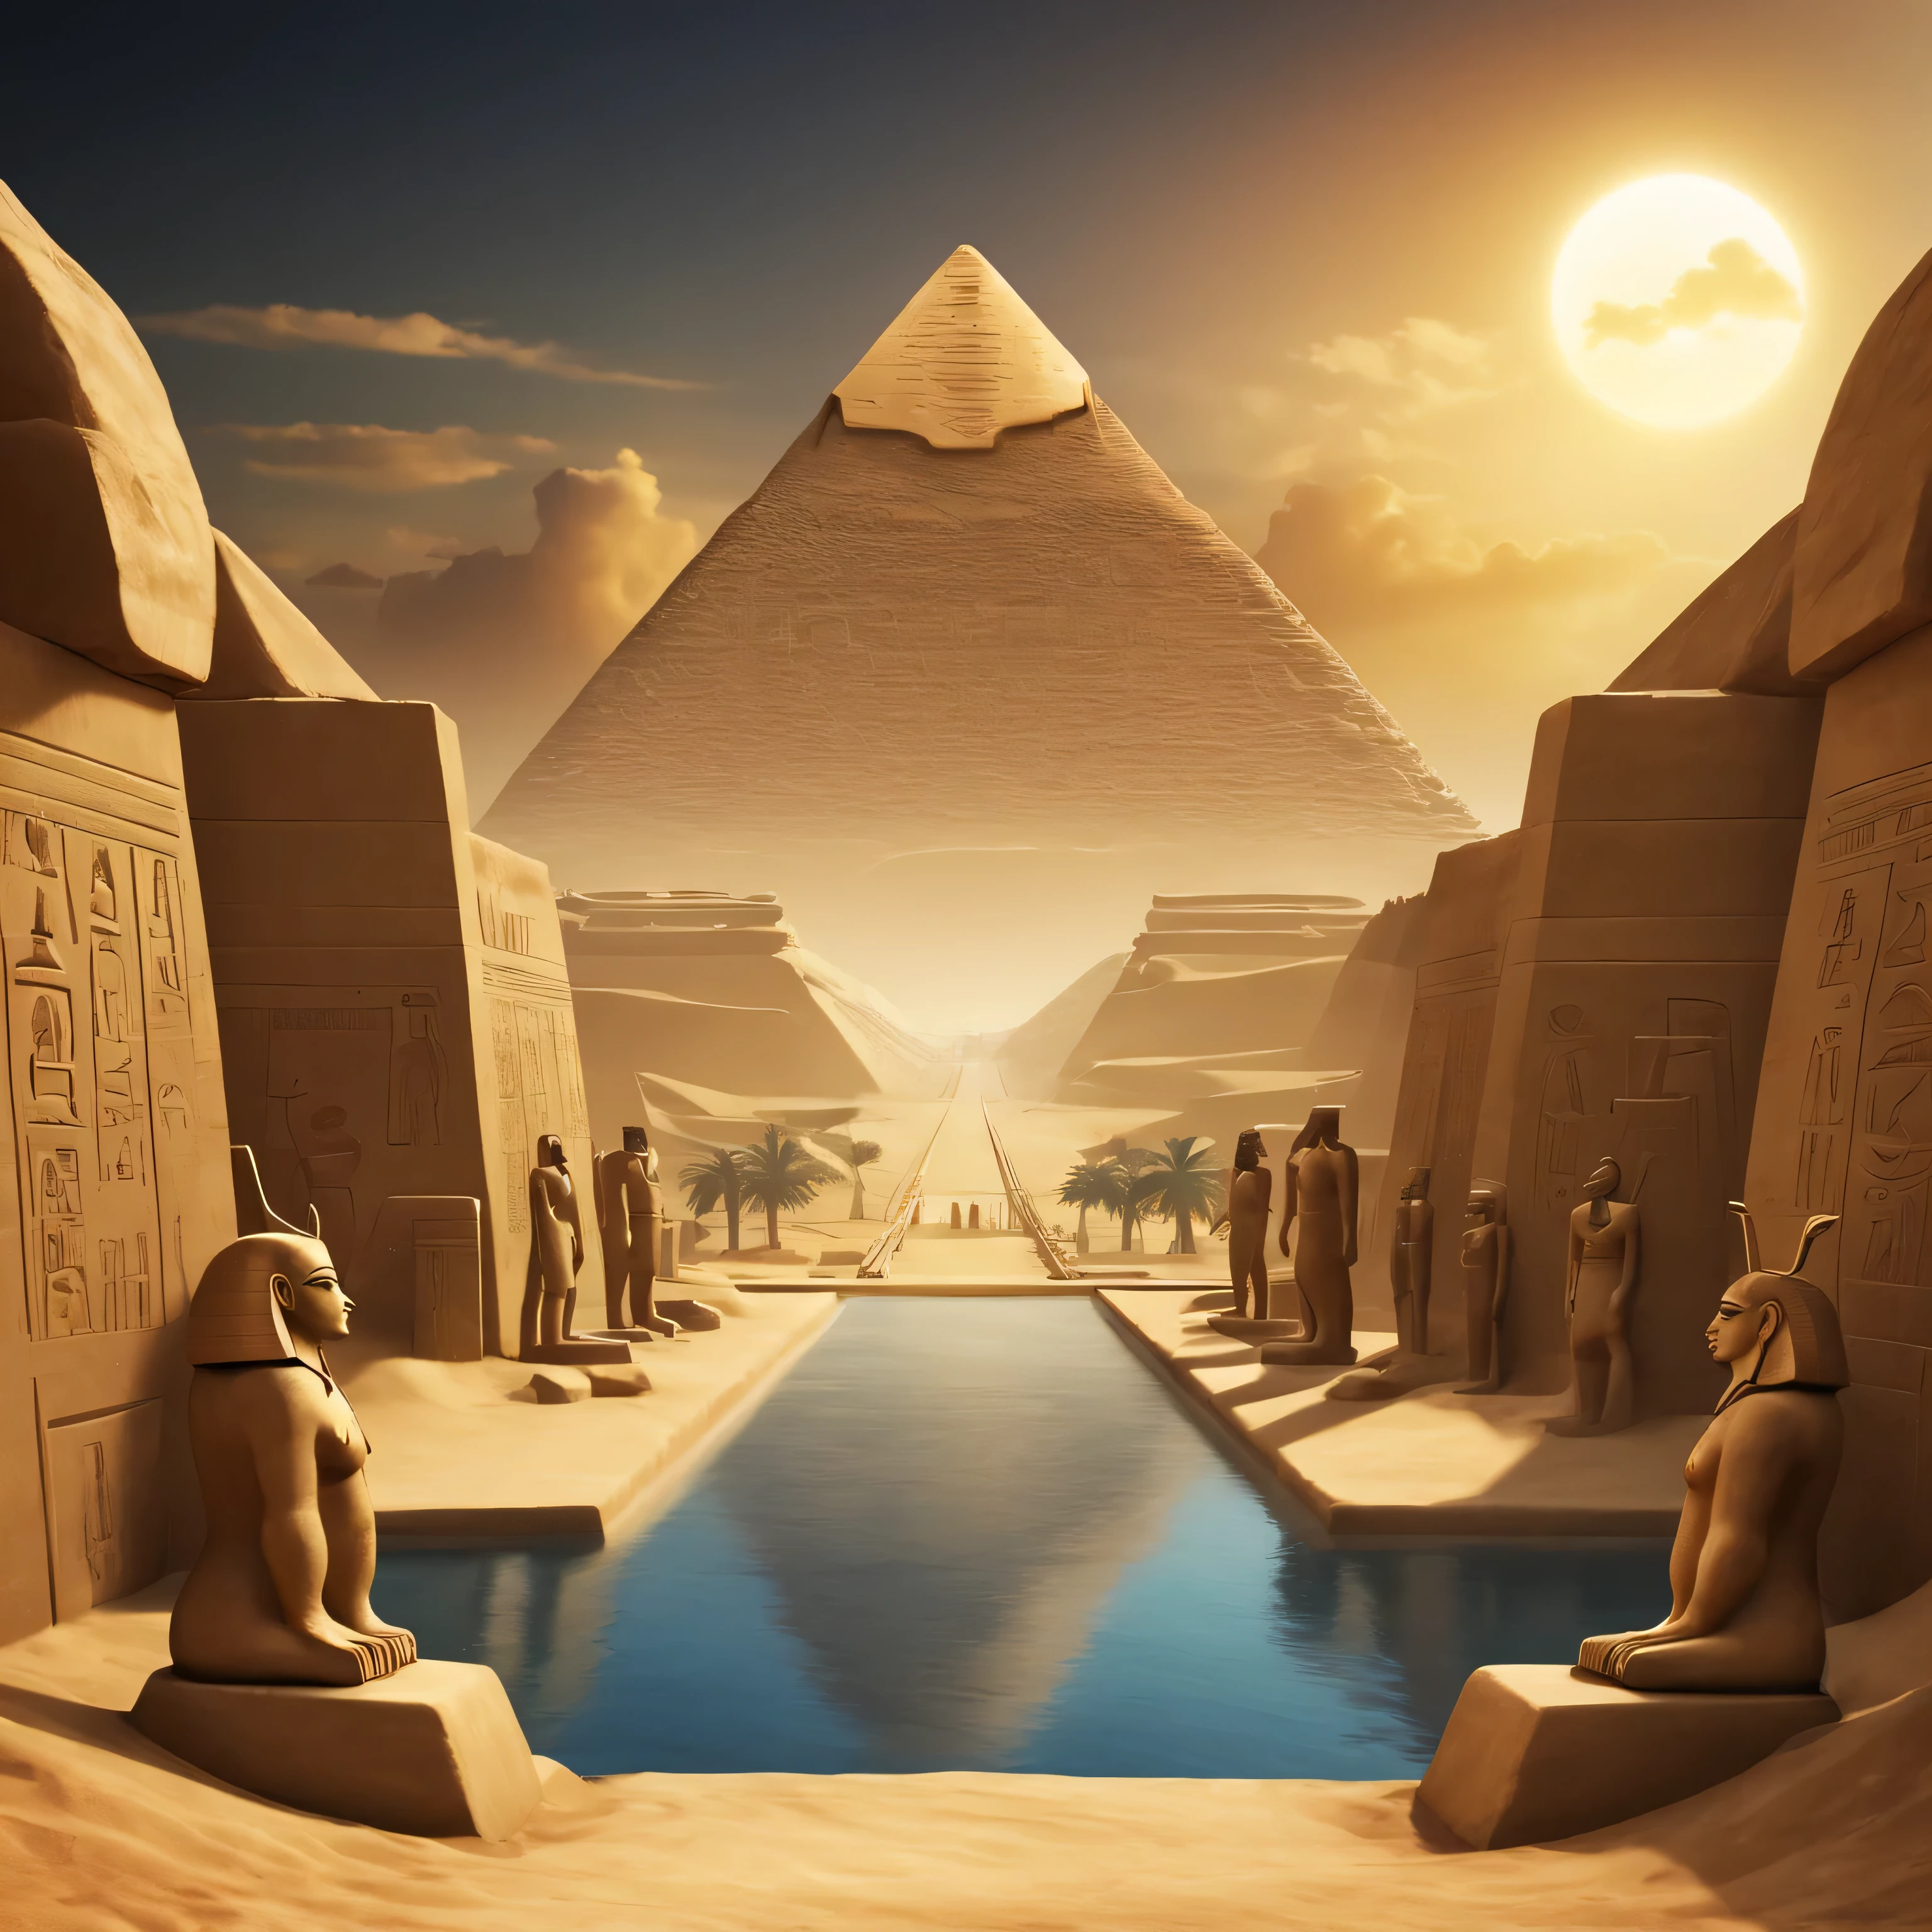 منظر طبيعي تظهر فيه جميع الآلهة الرئيسية في مصر القديمة في الأفق. يجب استخدام الرموز والأشكال الخاصة بمصر القديمة في الخلفية والهوامش. على الأقل 4 آلهة...